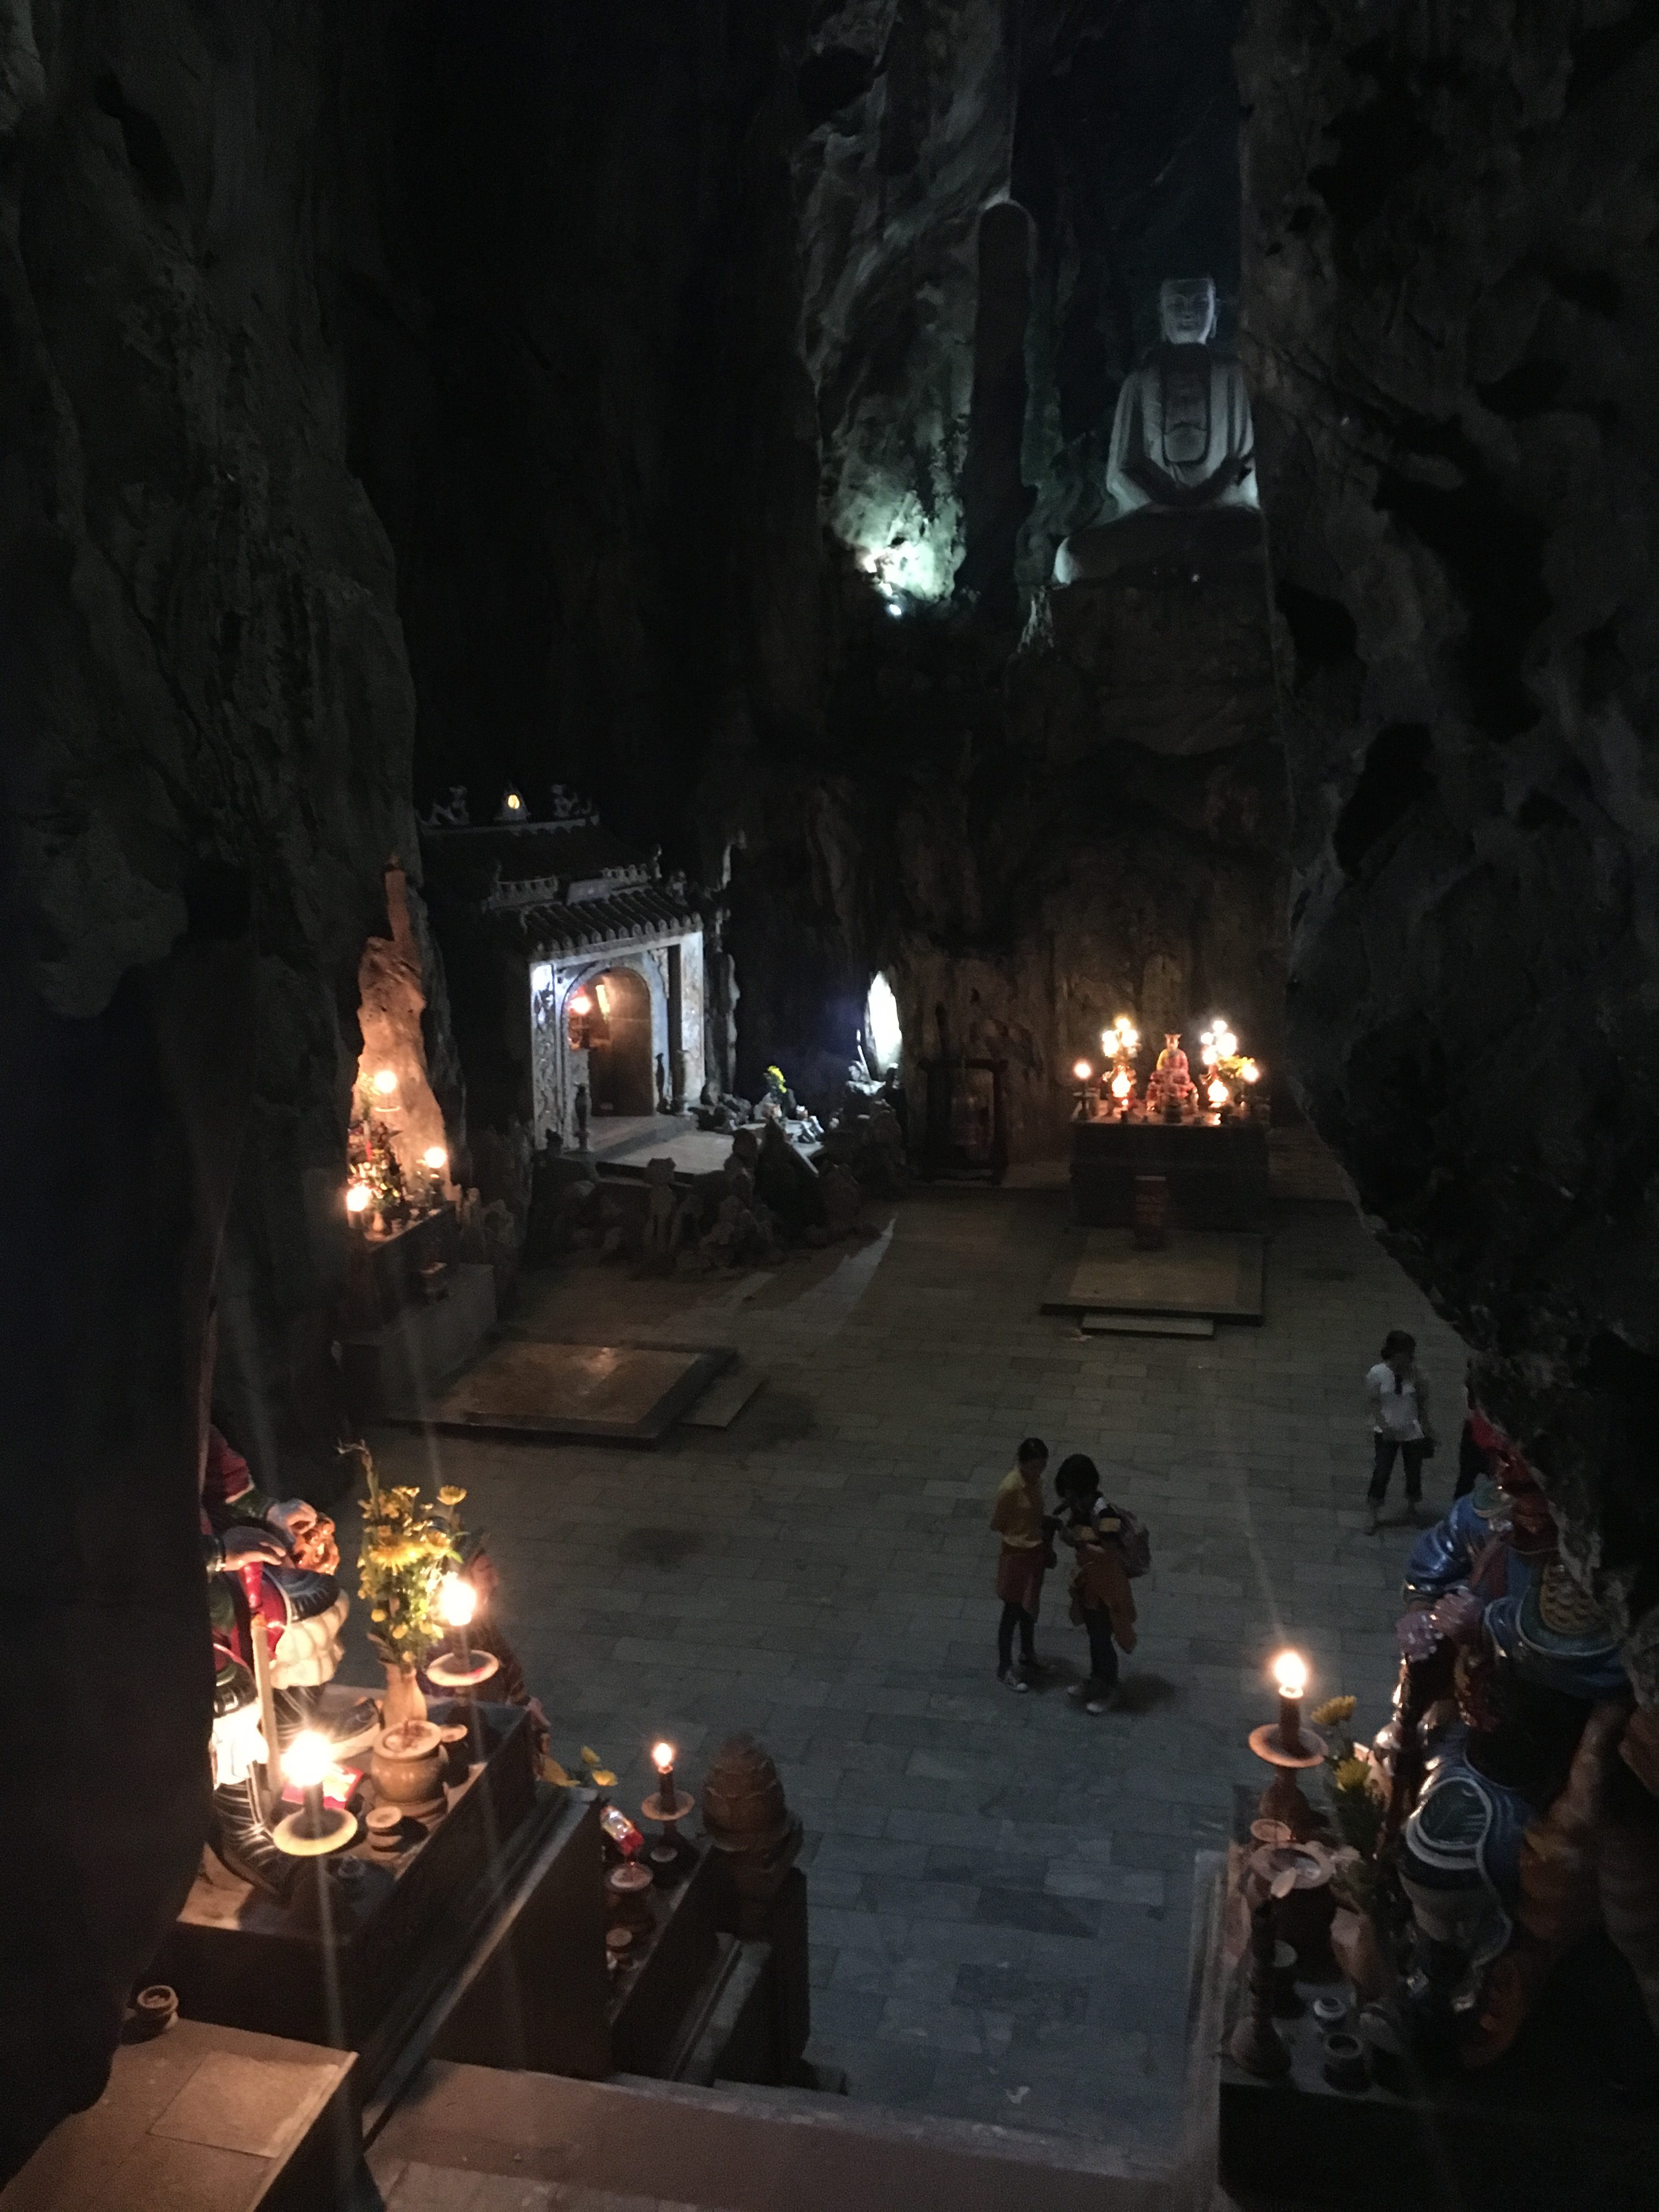 Inside Marble Mountain in Da Nang, Vietnam.